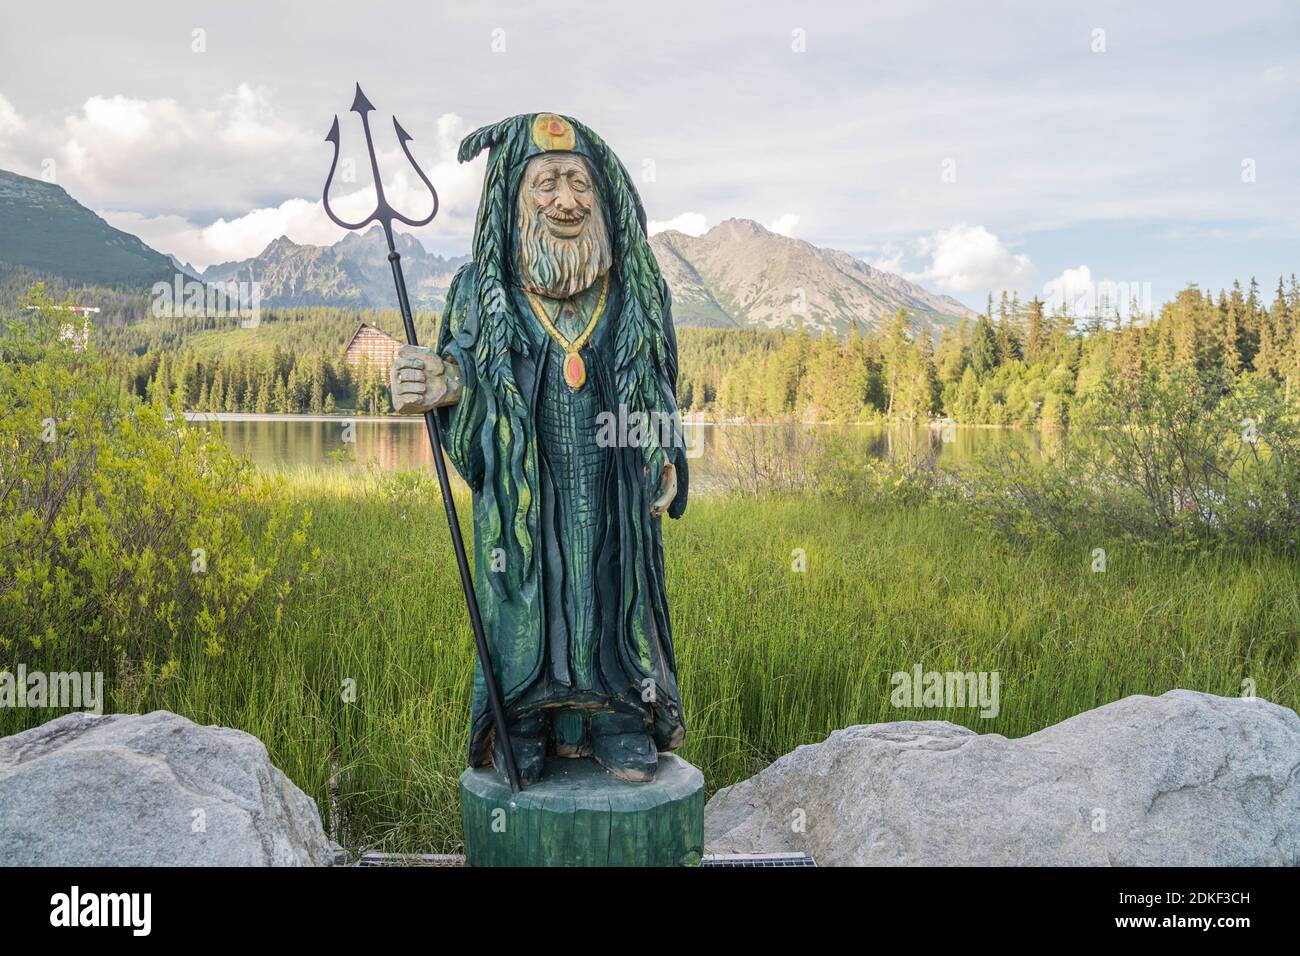 Statue de Waterman au bord du lac de montagne dans le parc national de High Tatras. Strbske pleso, Slovaquie, Europe. Soirée en fin d'été au bord du lac. Banque D'Images